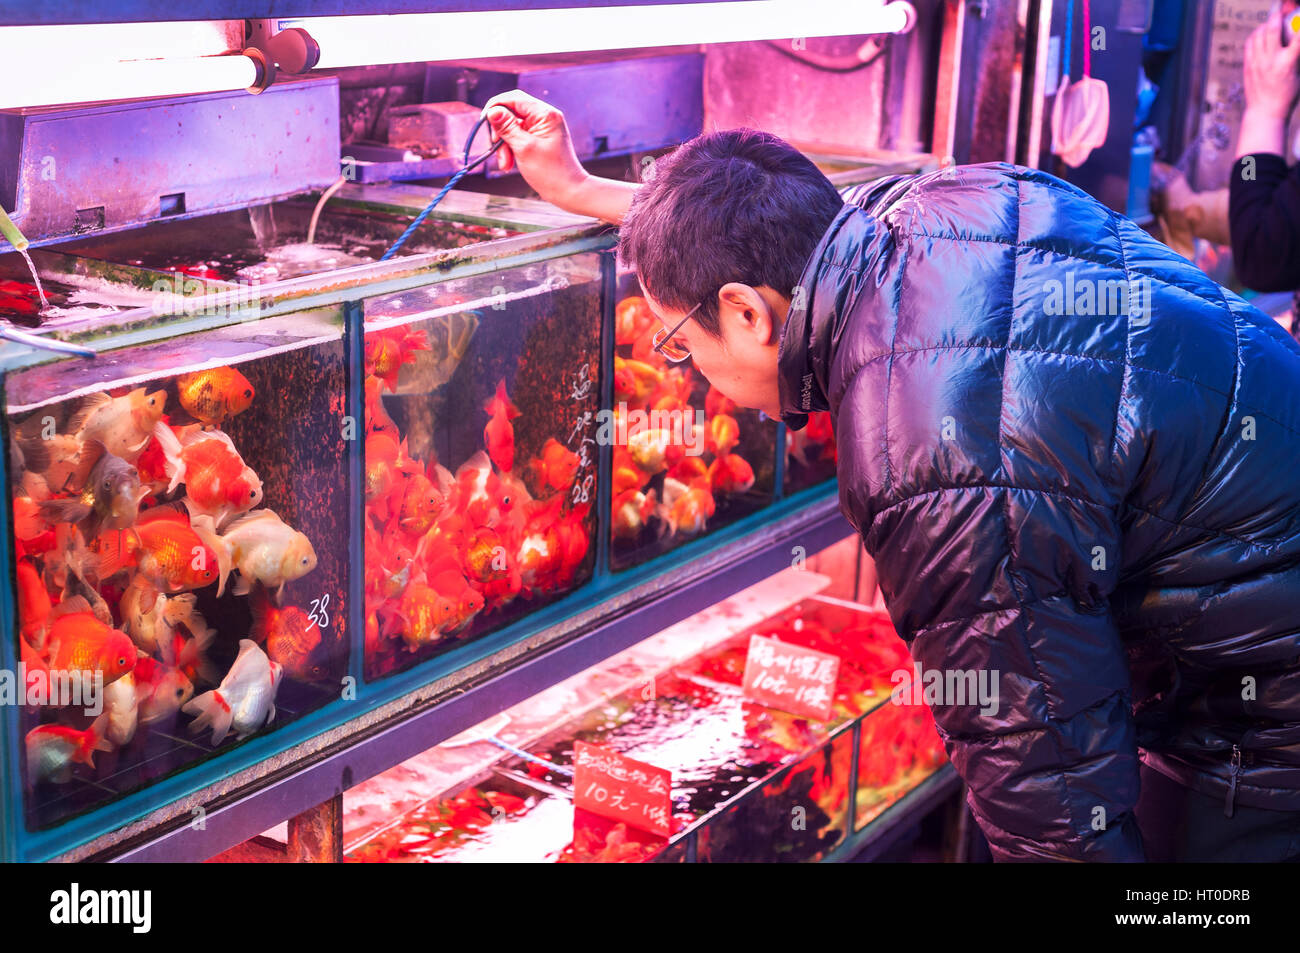 MONG KOK, HONG KONG - Jan 9, 2014 - Hong Kong un homme choisit un poisson rouge dans un magasin au marché de poissons rouges Tung Choi Street, Mong Kok, Kowloon Banque D'Images